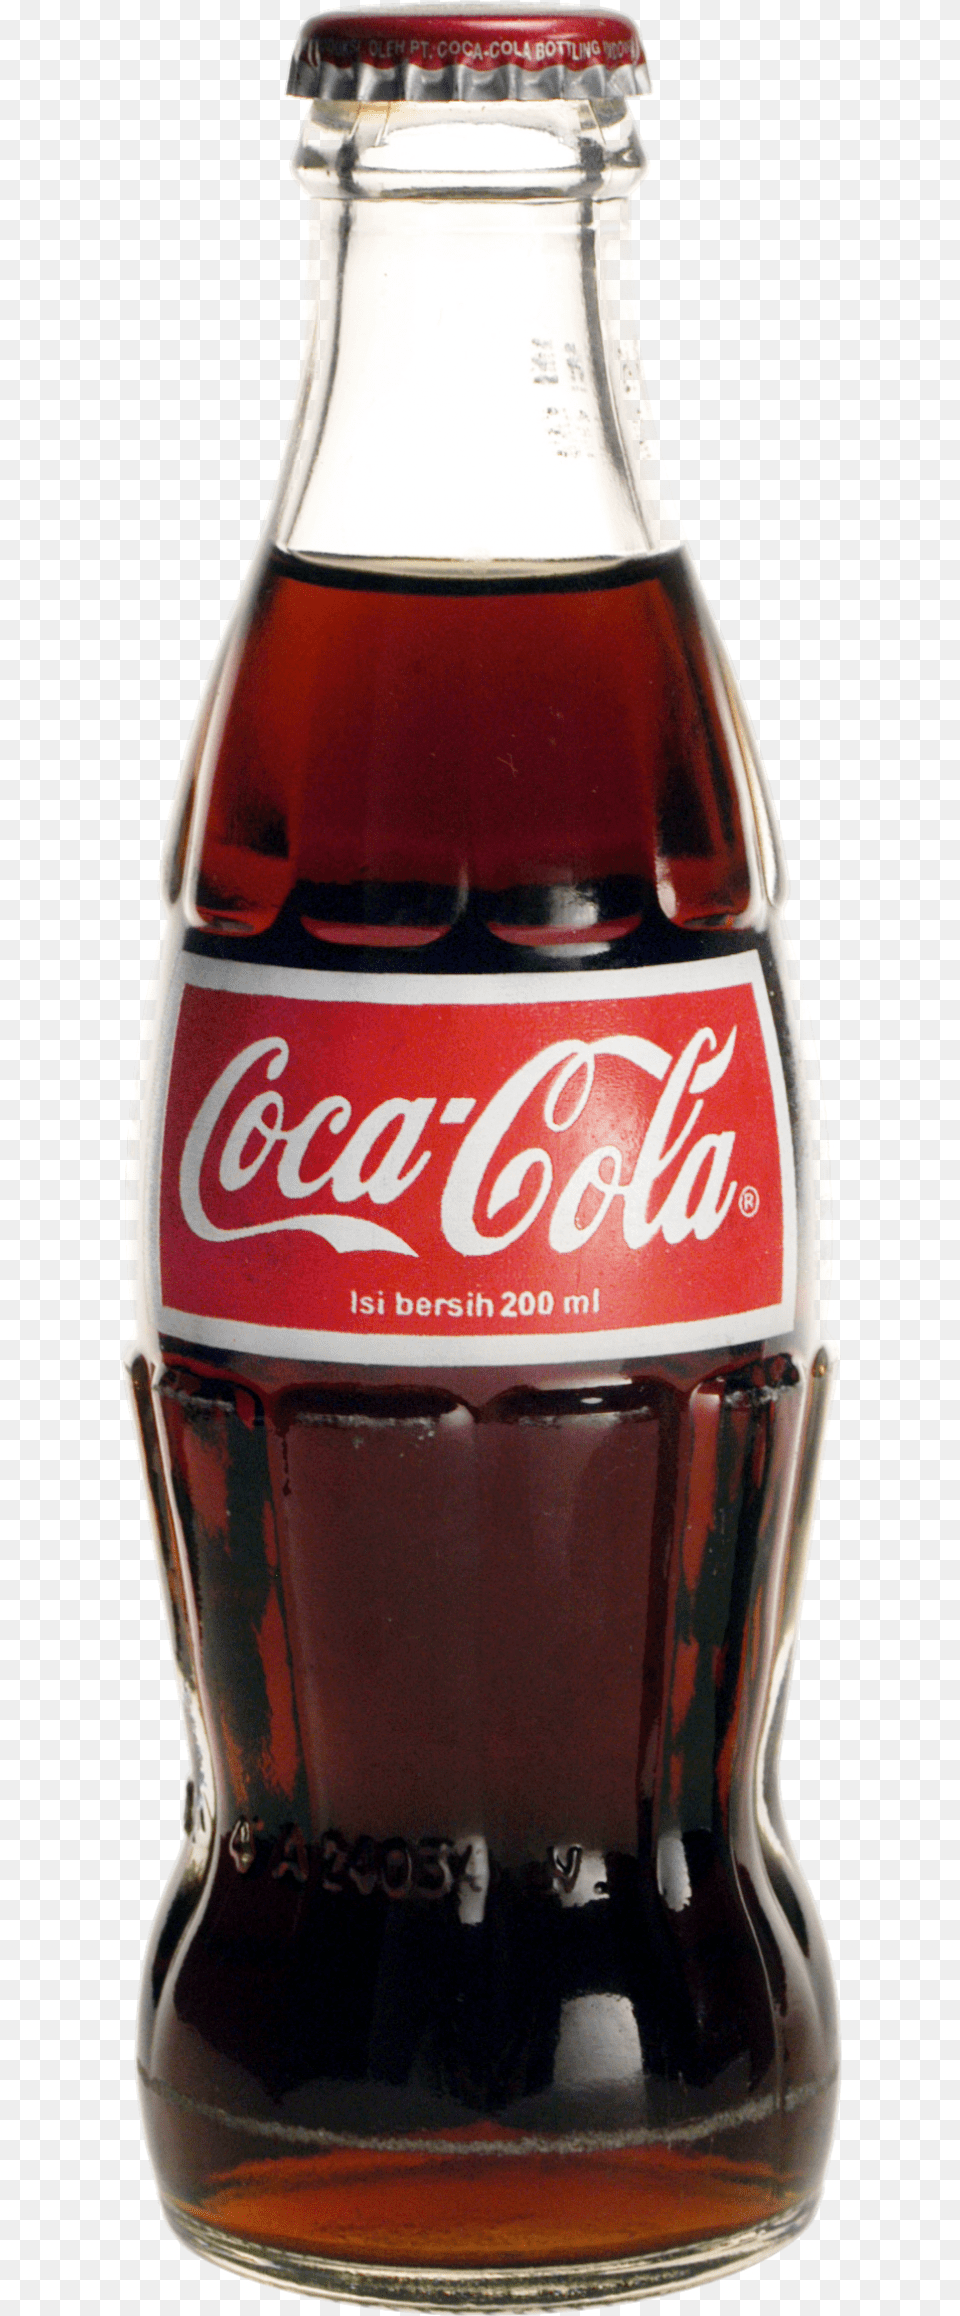 Coca Cola Bottle Image Coke Bottle Cut Out, Beverage, Soda, Alcohol, Beer Png